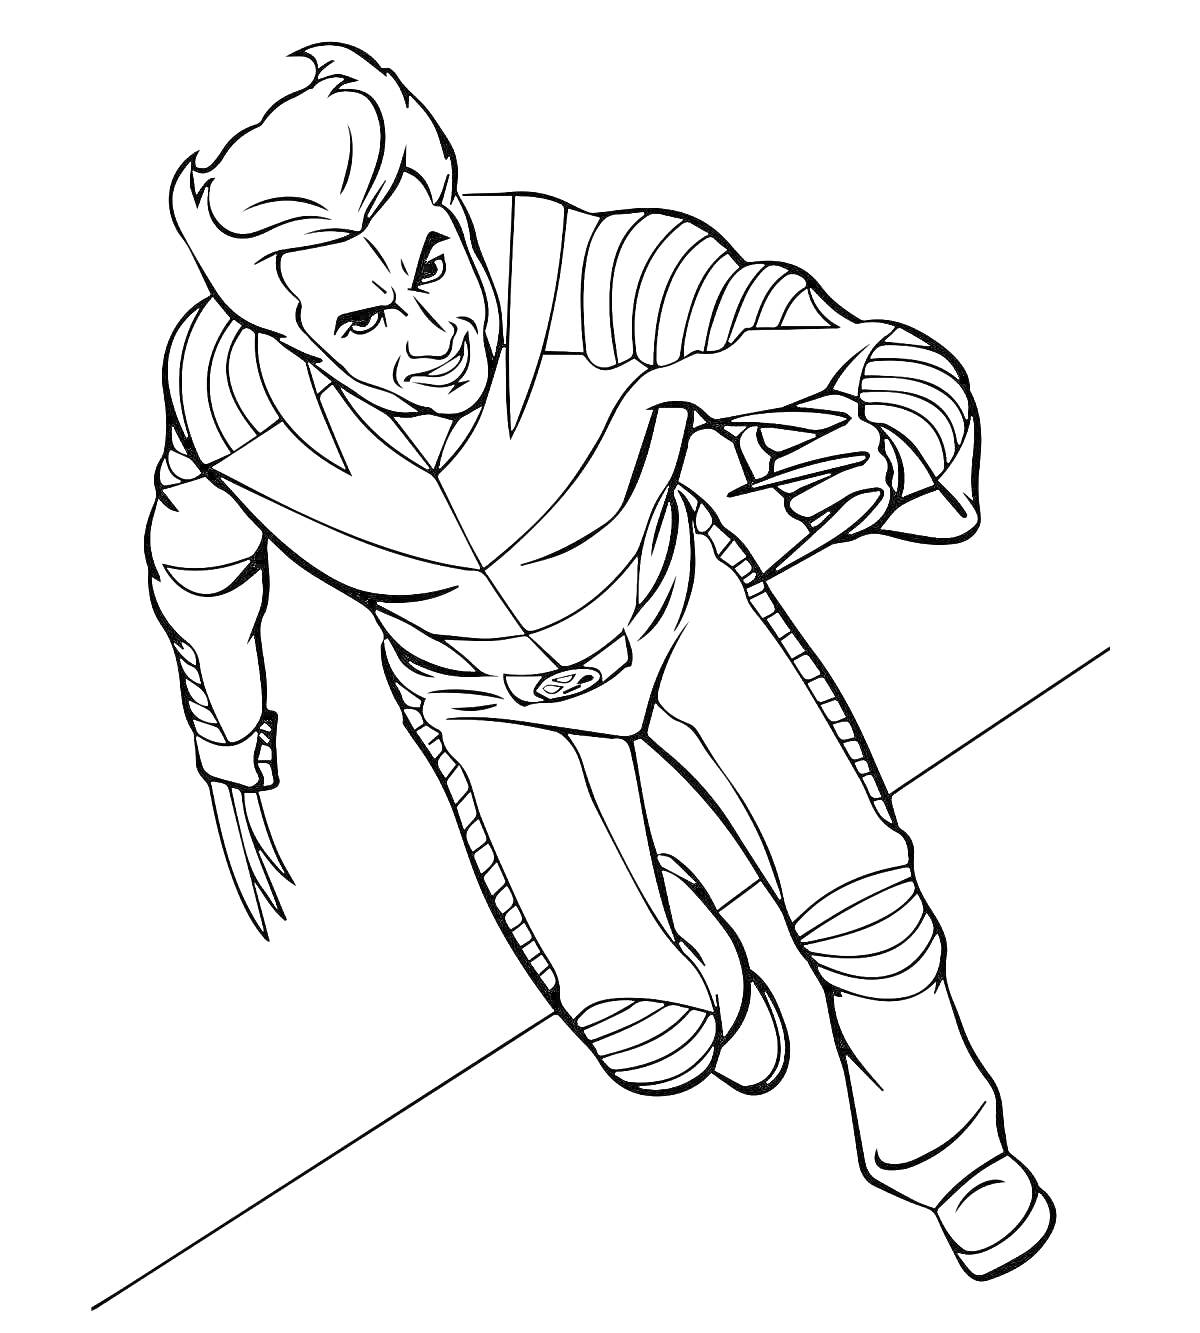 Раскраска Гуджитцу - супергерой в прыжке с когтями